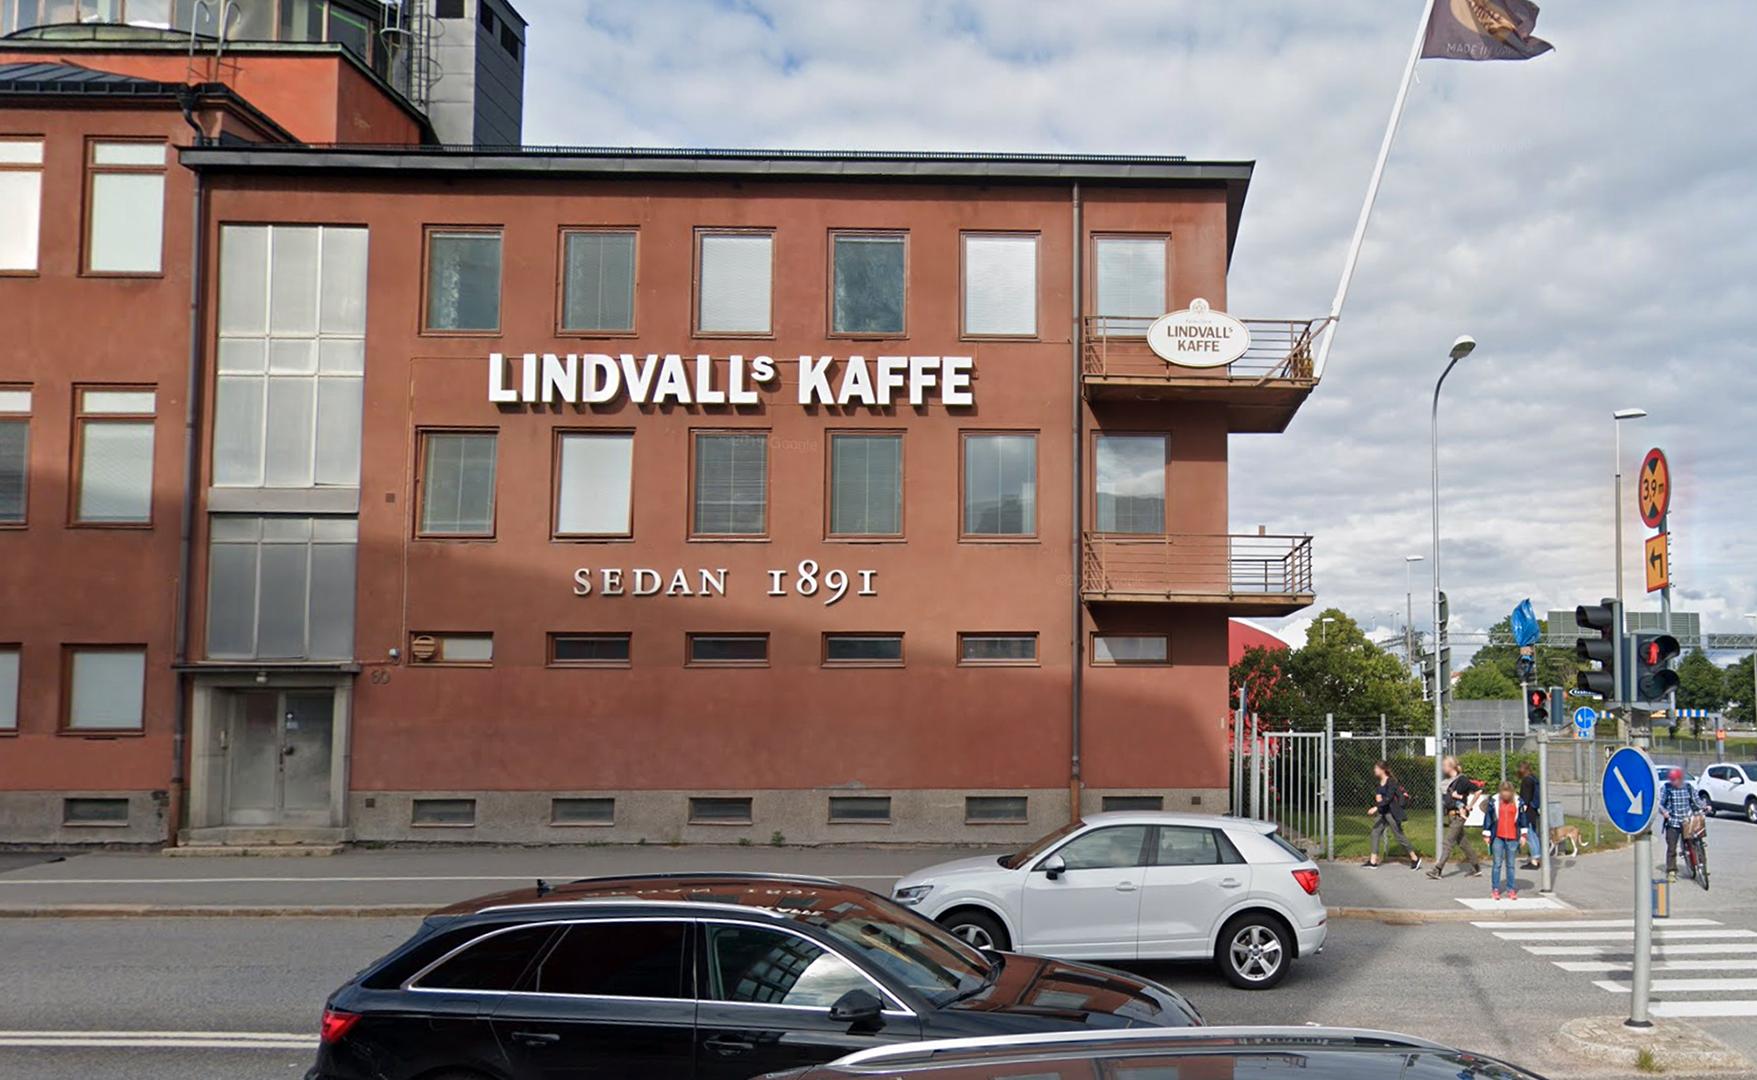 Lindvalls kaffe klarade sig från skador på byggnaden.